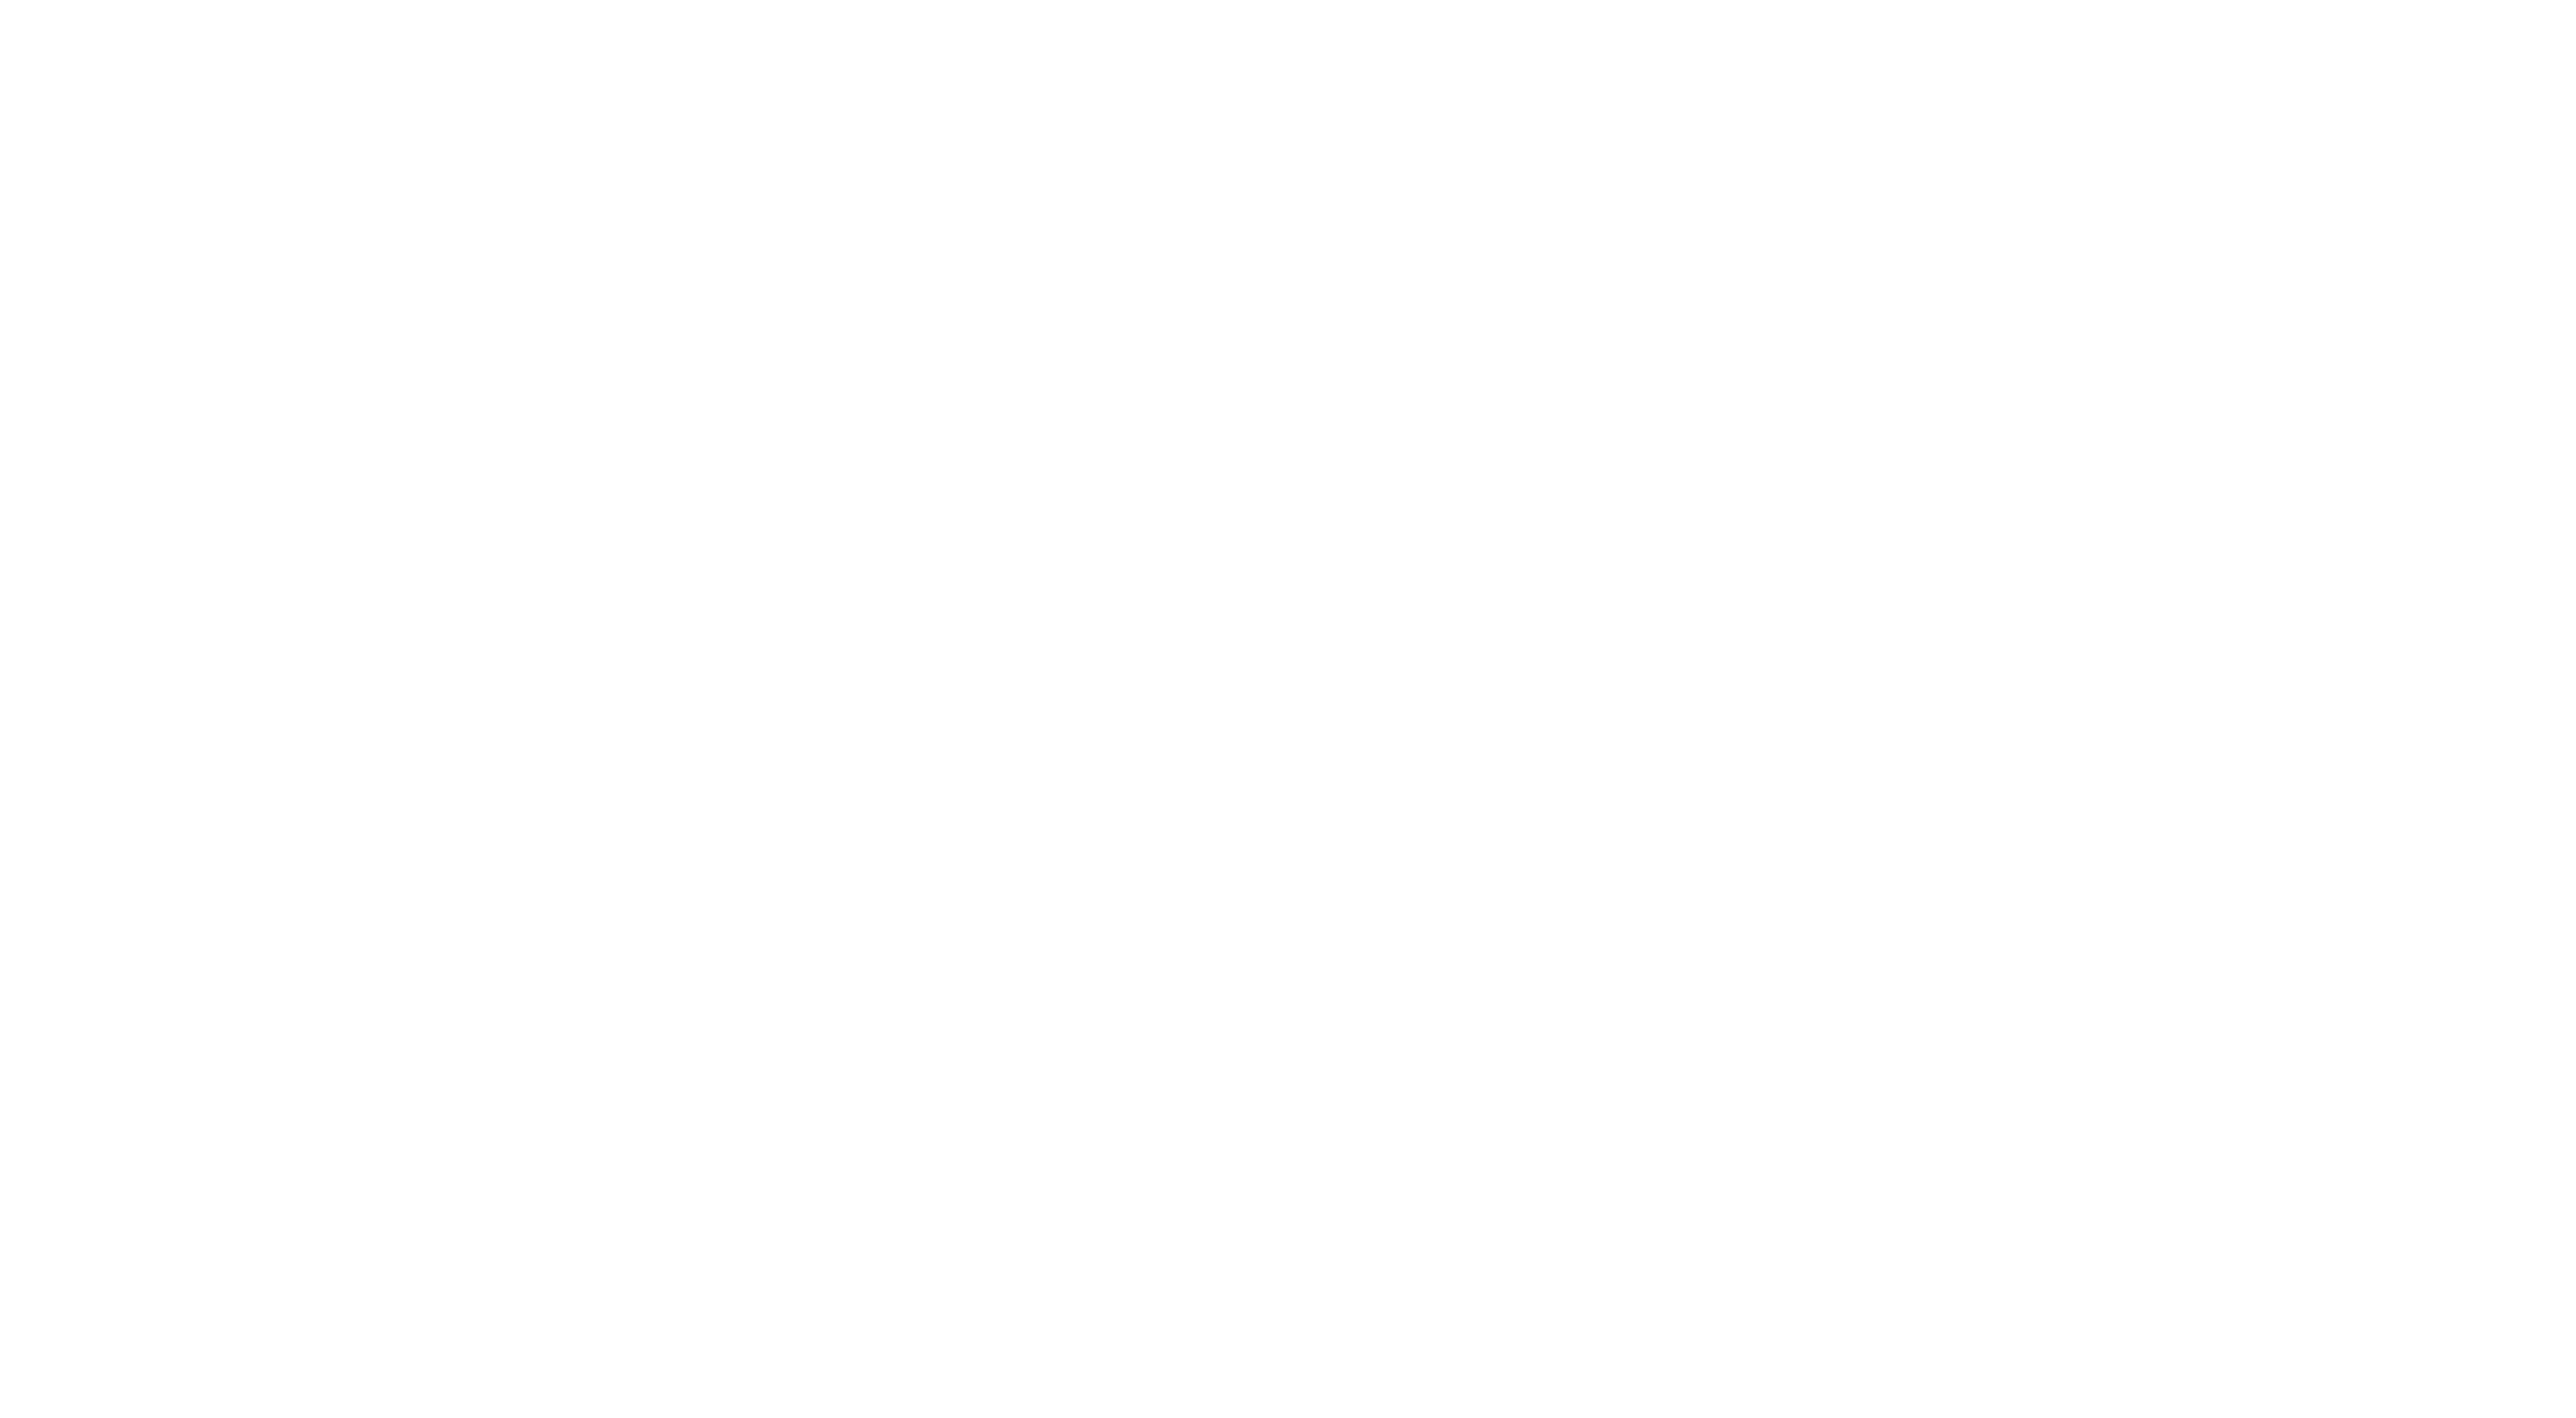 PhiloPhilo